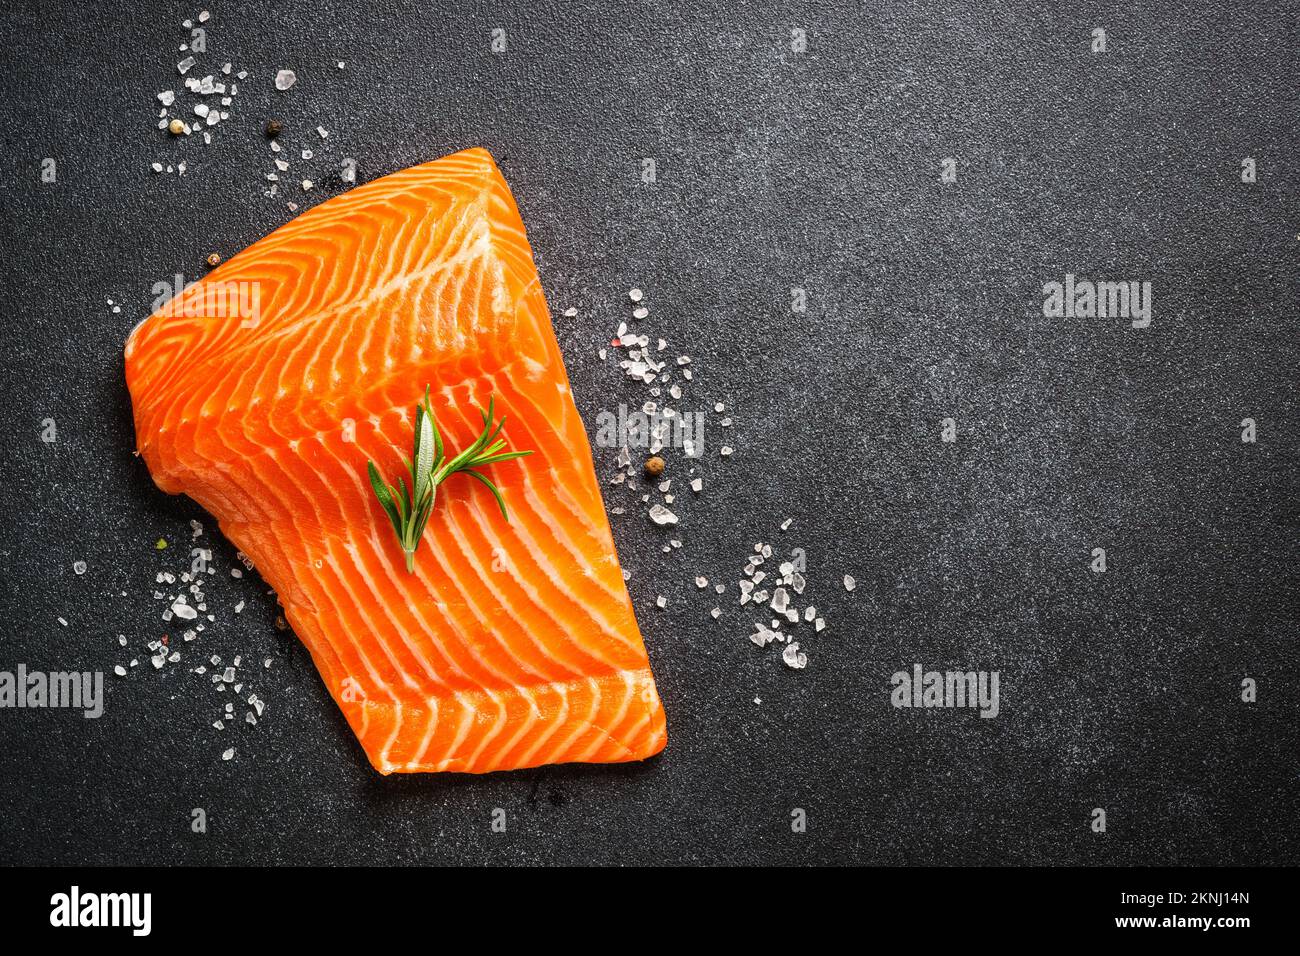 Saumon cru, filet de poisson frais sur fond noir. Banque D'Images